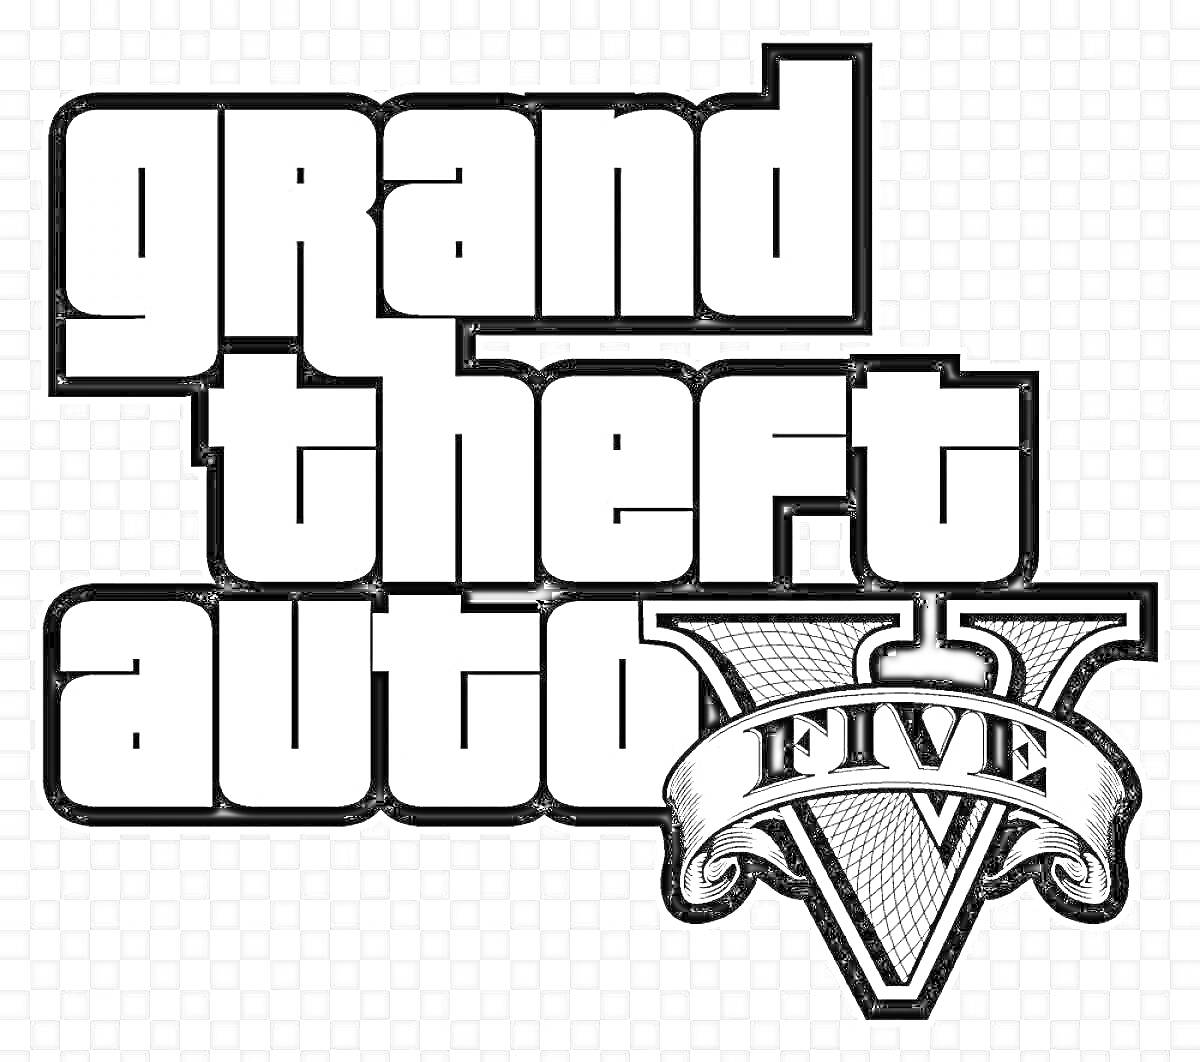 Раскраска Логотип игры Grand Theft Auto V (GTA 5) с текстом 